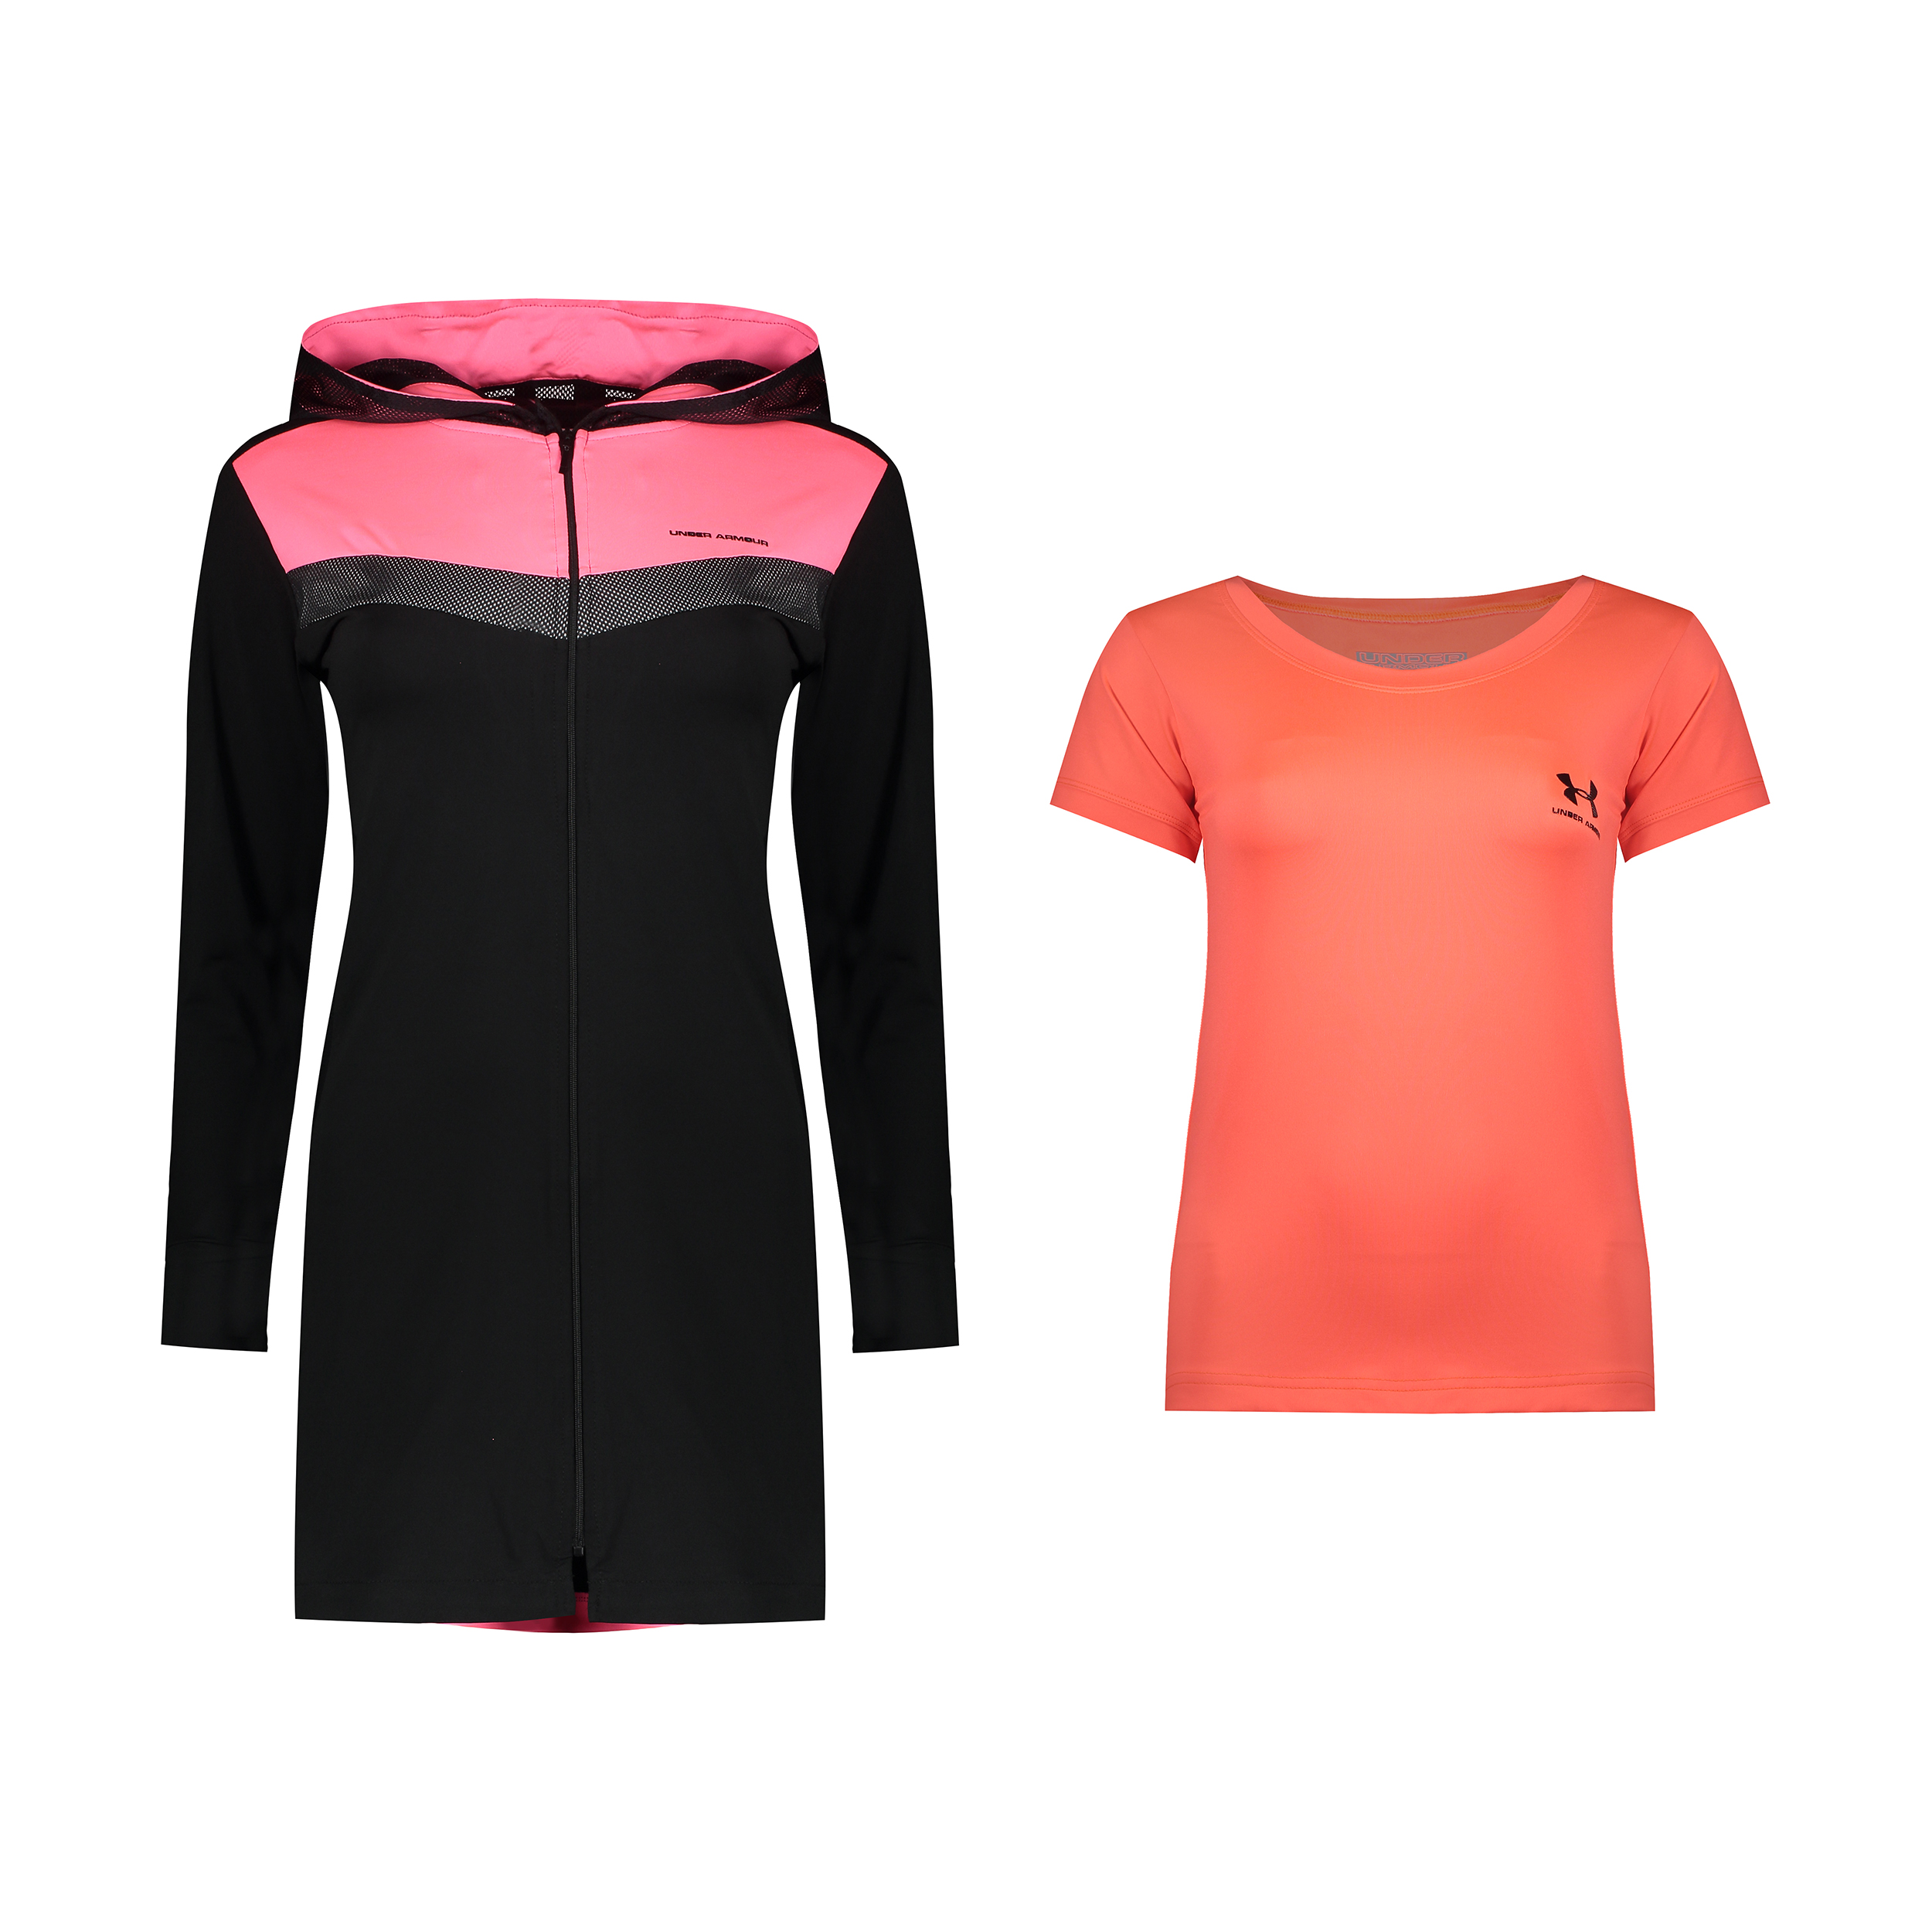 ست تی شرت و گرمکن ورزشی زنانه آندر آرمور کد TH3-0081 .